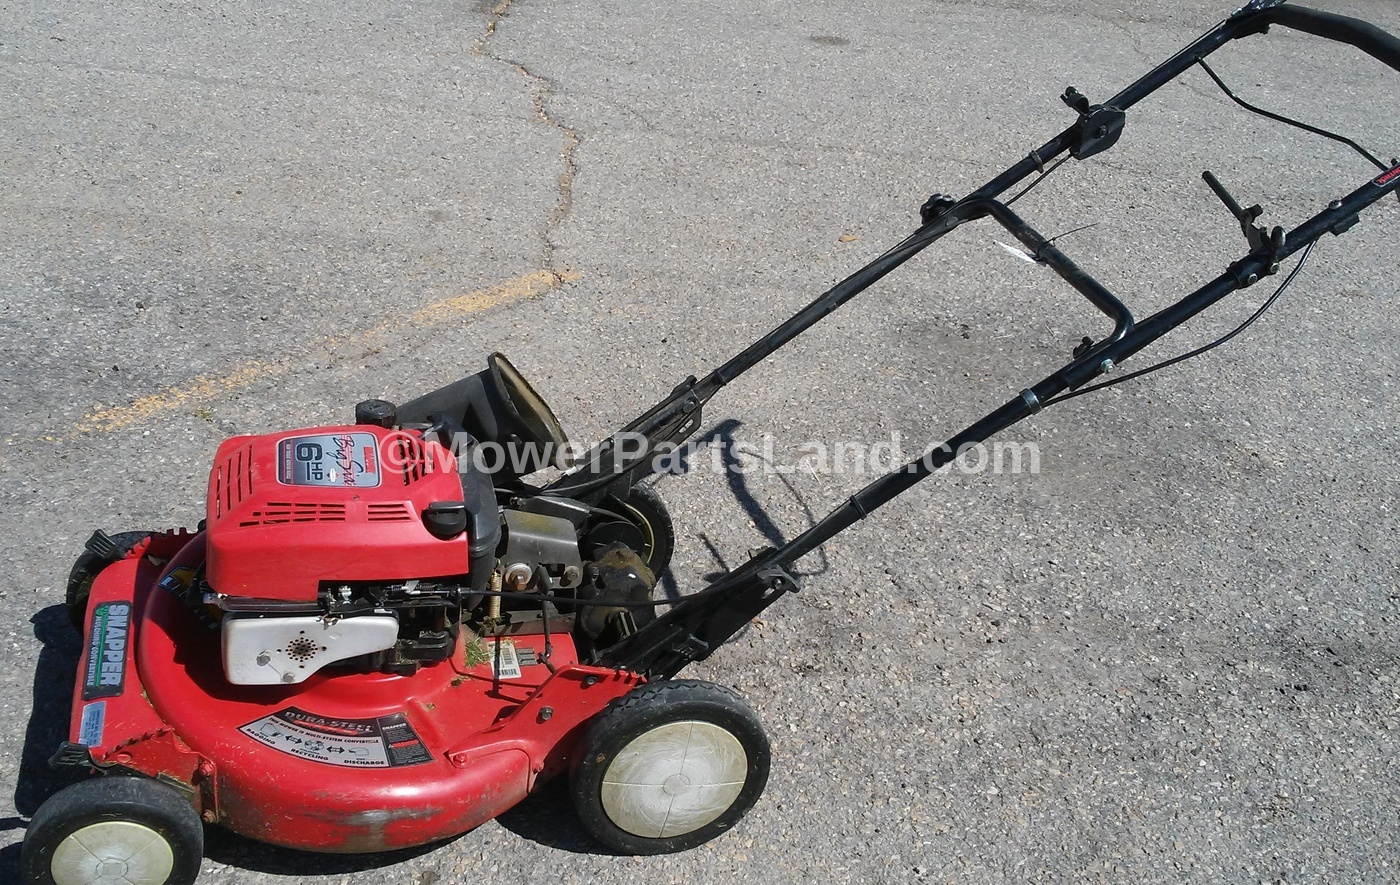 Carburetor For Snapper Model P216012 (75496864) Lawn Mower